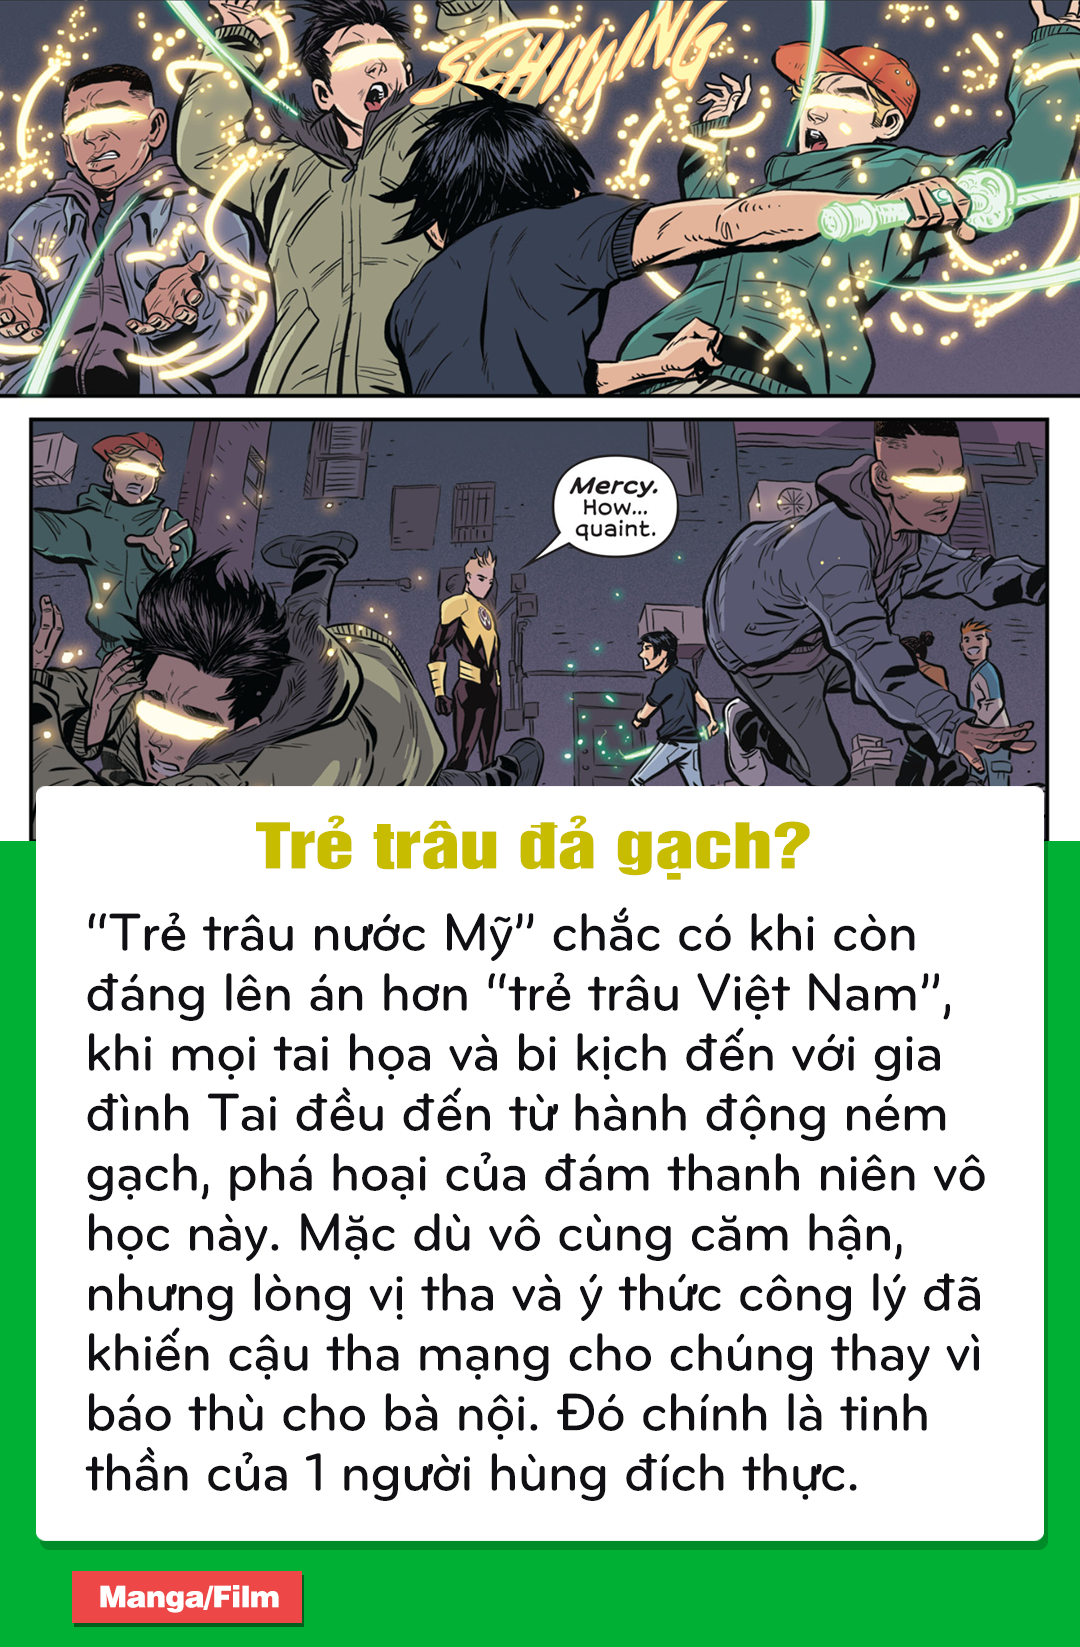 DC Comics: Điểm lại những chi tiết thú vị trong bộ truyện về siêu anh hùng Green Lantern người Việt - Tài Phạm - Ảnh 11.